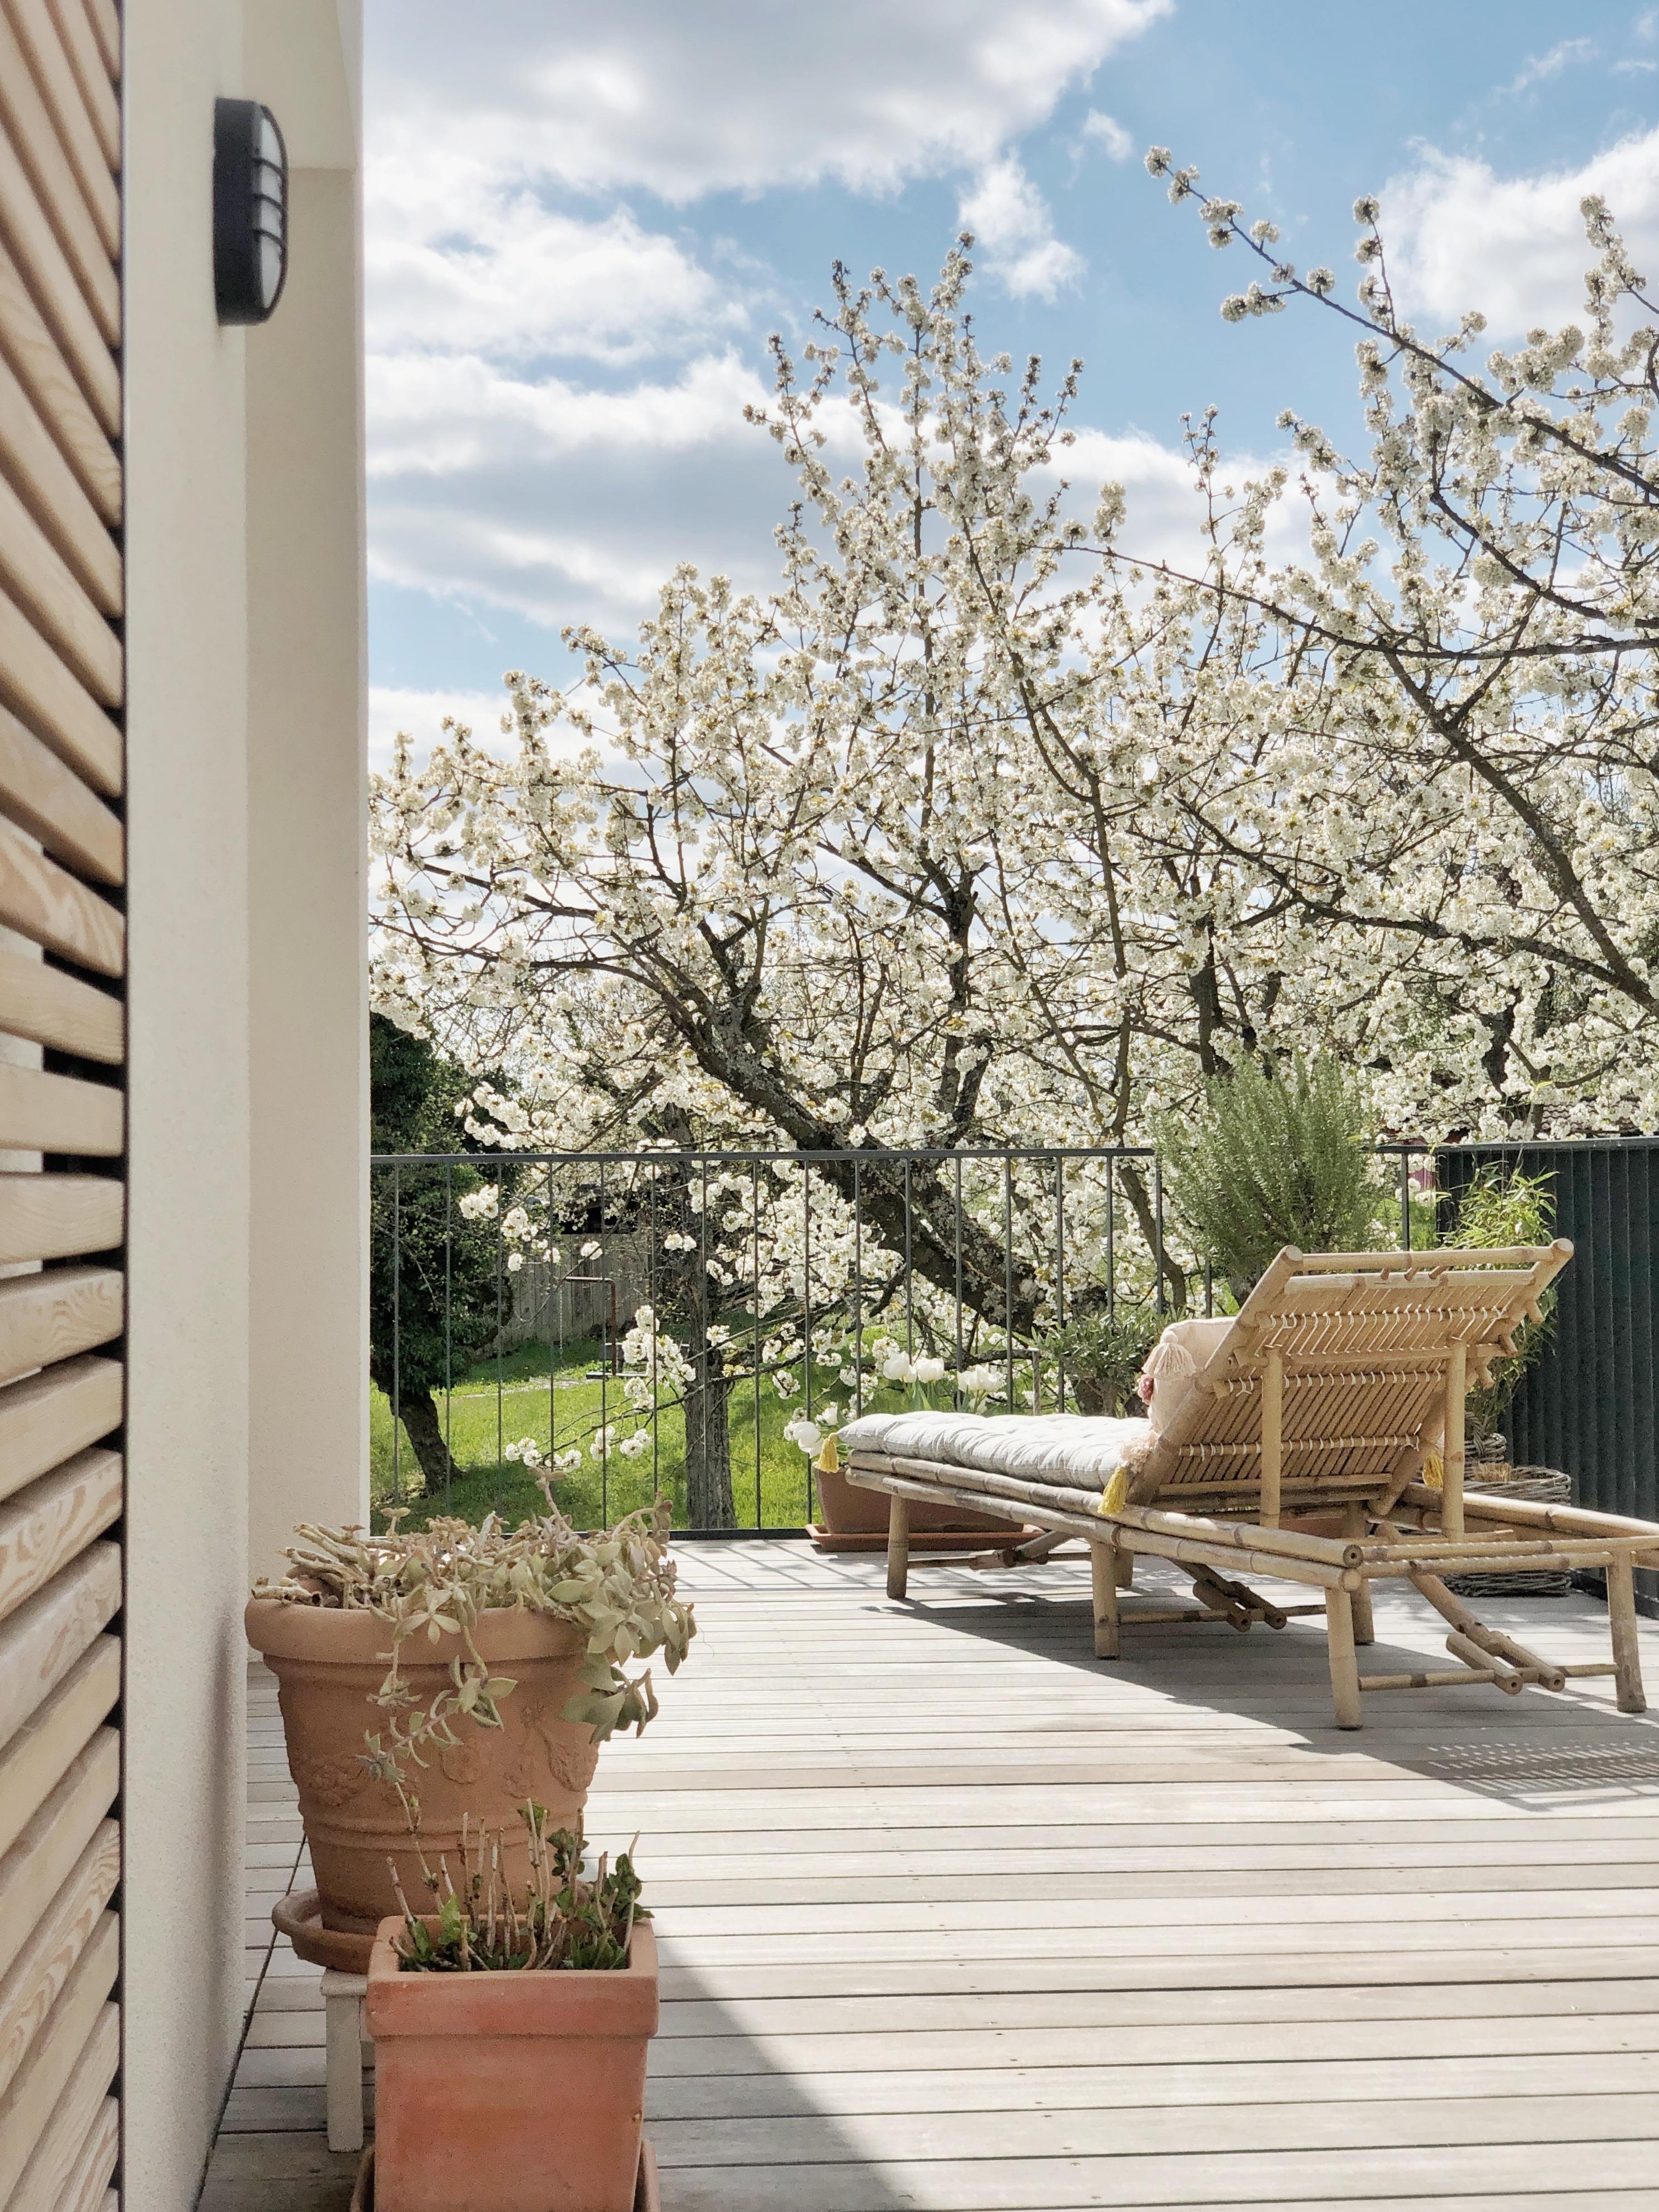 Frühling auf der Terrasse!
#terrasse#terrace#spring#garden#outdoor#freisitz#liegestuhl